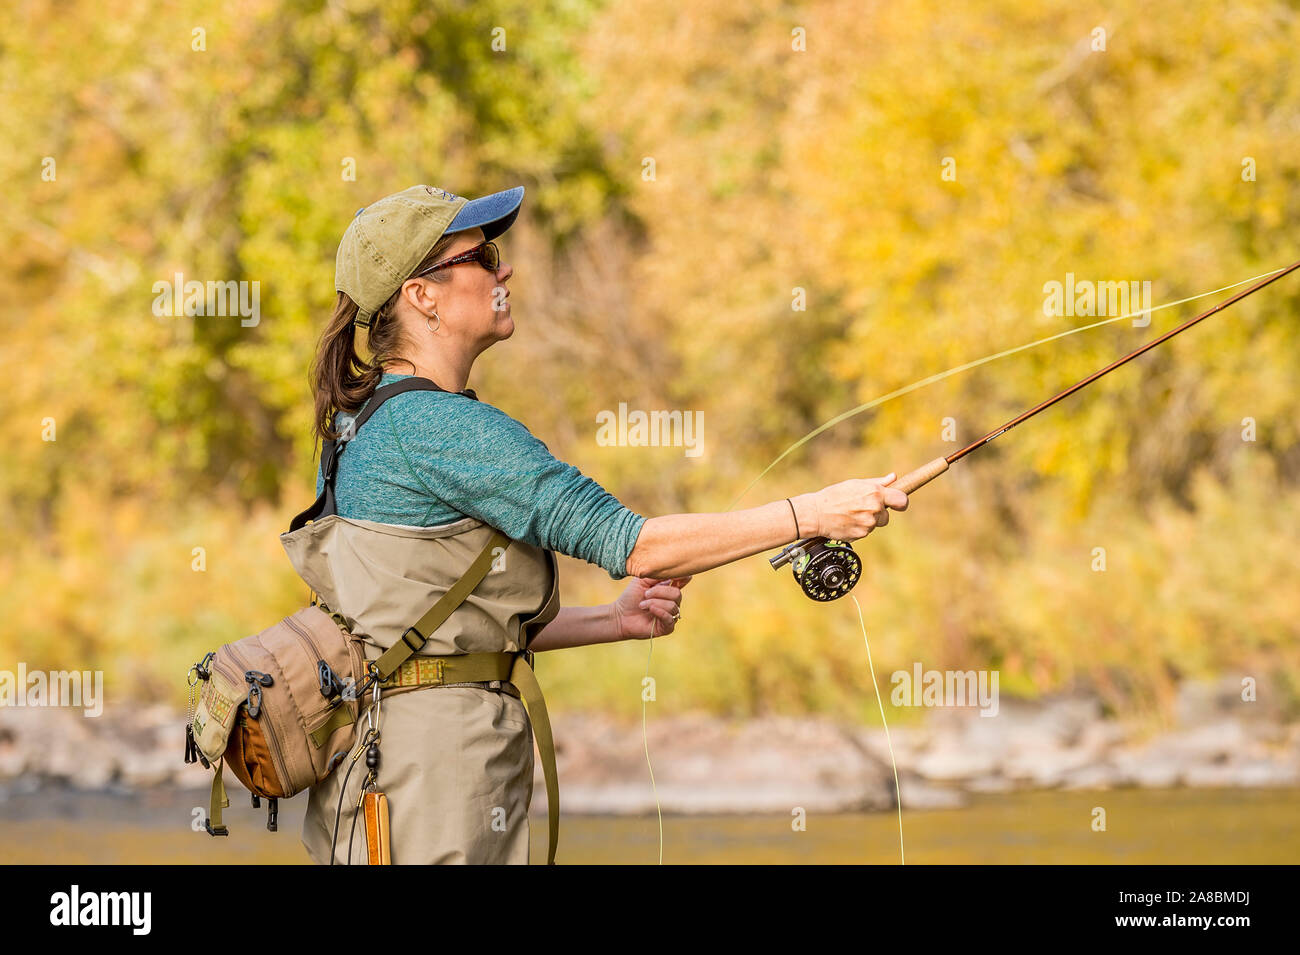 Une femme sur les poissons voler Powder River sur un après-midi d'automne ensoleillé. Banque D'Images